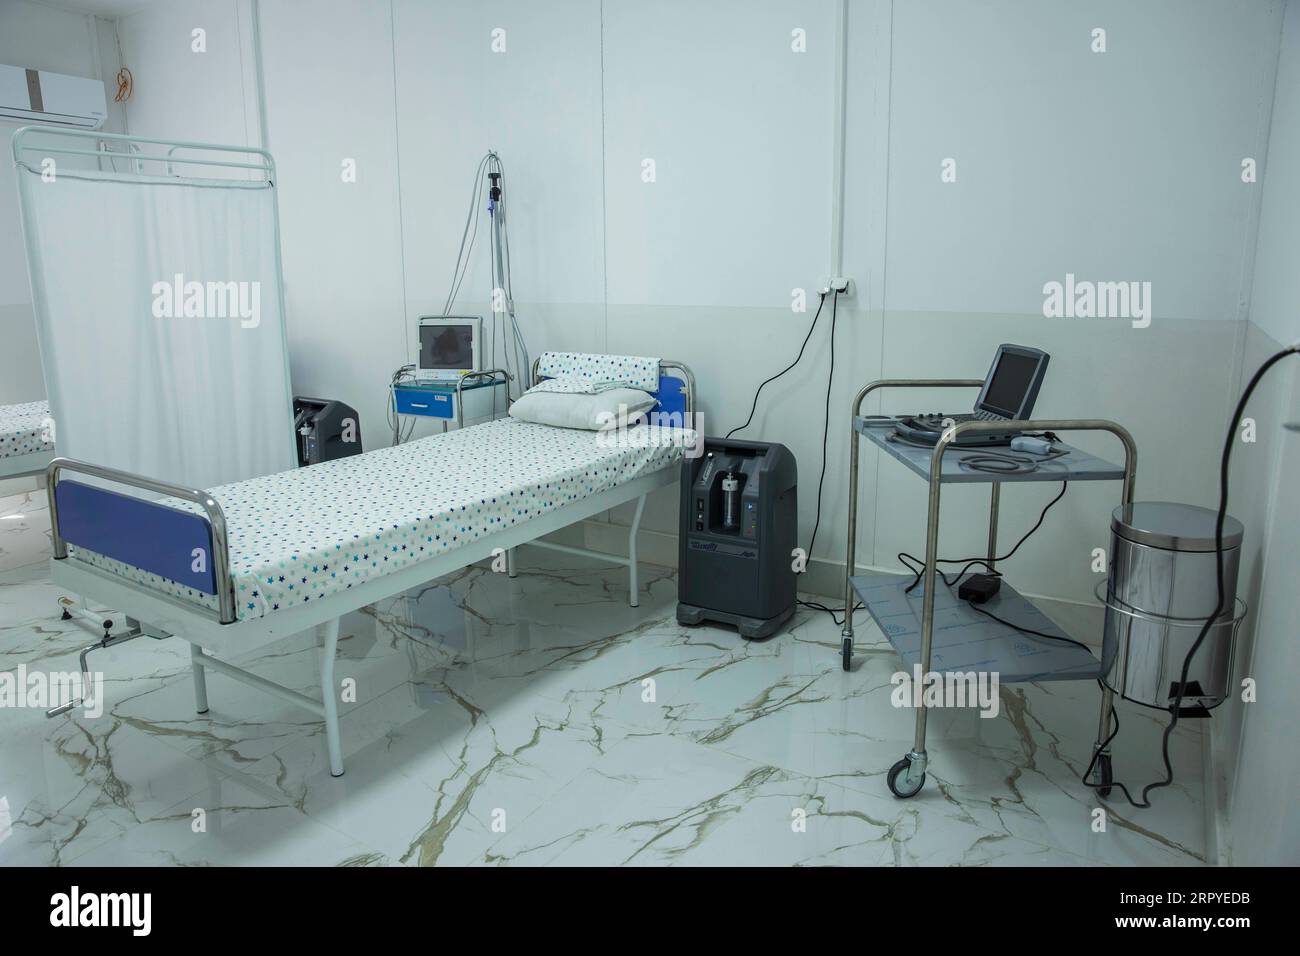 200627 -- HERAT, 27. Juni 2020 Xinhua -- Foto vom 27. Juni 2020 zeigt ein leeres Bett in einem Krankenhaus für COVID-19-Patienten in Herat, Afghanistan. Das afghanische Ministerium für öffentliche Gesundheit bestätigte am Samstag 165 neue COVID-19-Fälle, nachdem die Anzahl der Tests in den letzten Tagen aufgrund des Mangels an Testkits gesunken war, sagte das ministerium in einer Erklärung. Foto von Elaha Sahel/Xinhua AFGHANITSTAN-HERAT-COVID-19-HOSPITAL PUBLICATIONxNOTxINxCHN Stockfoto